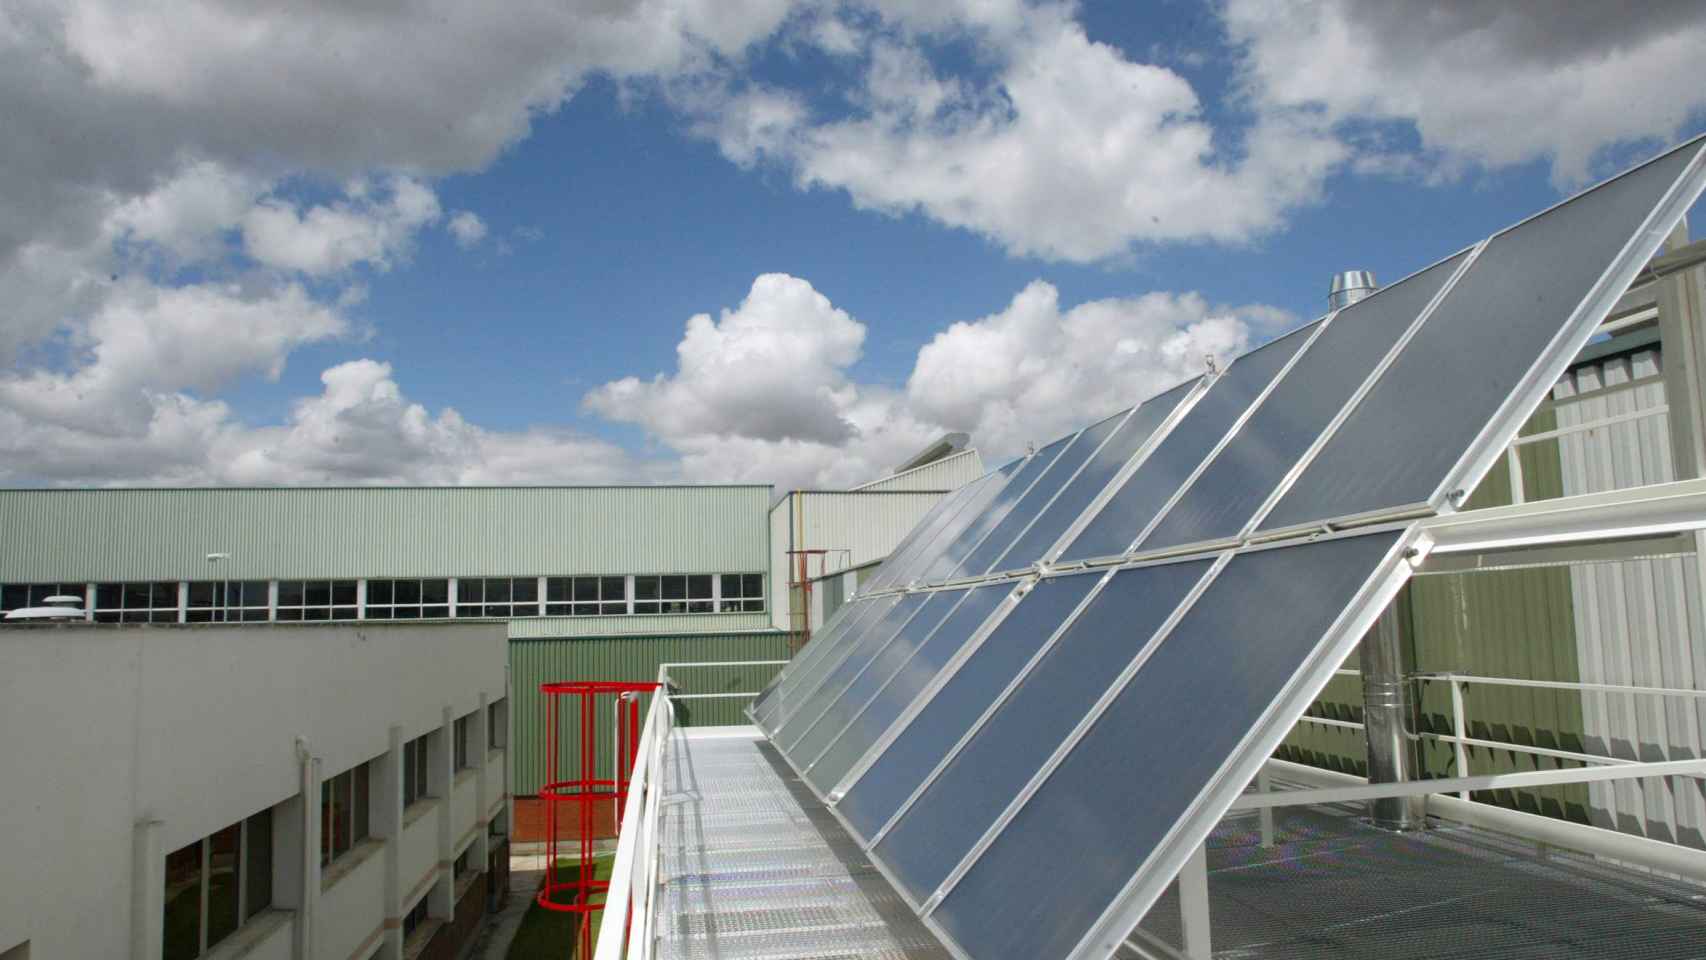 Paneles solares que generan energía para calentar el agua sanitarisa en los talleres de Renault